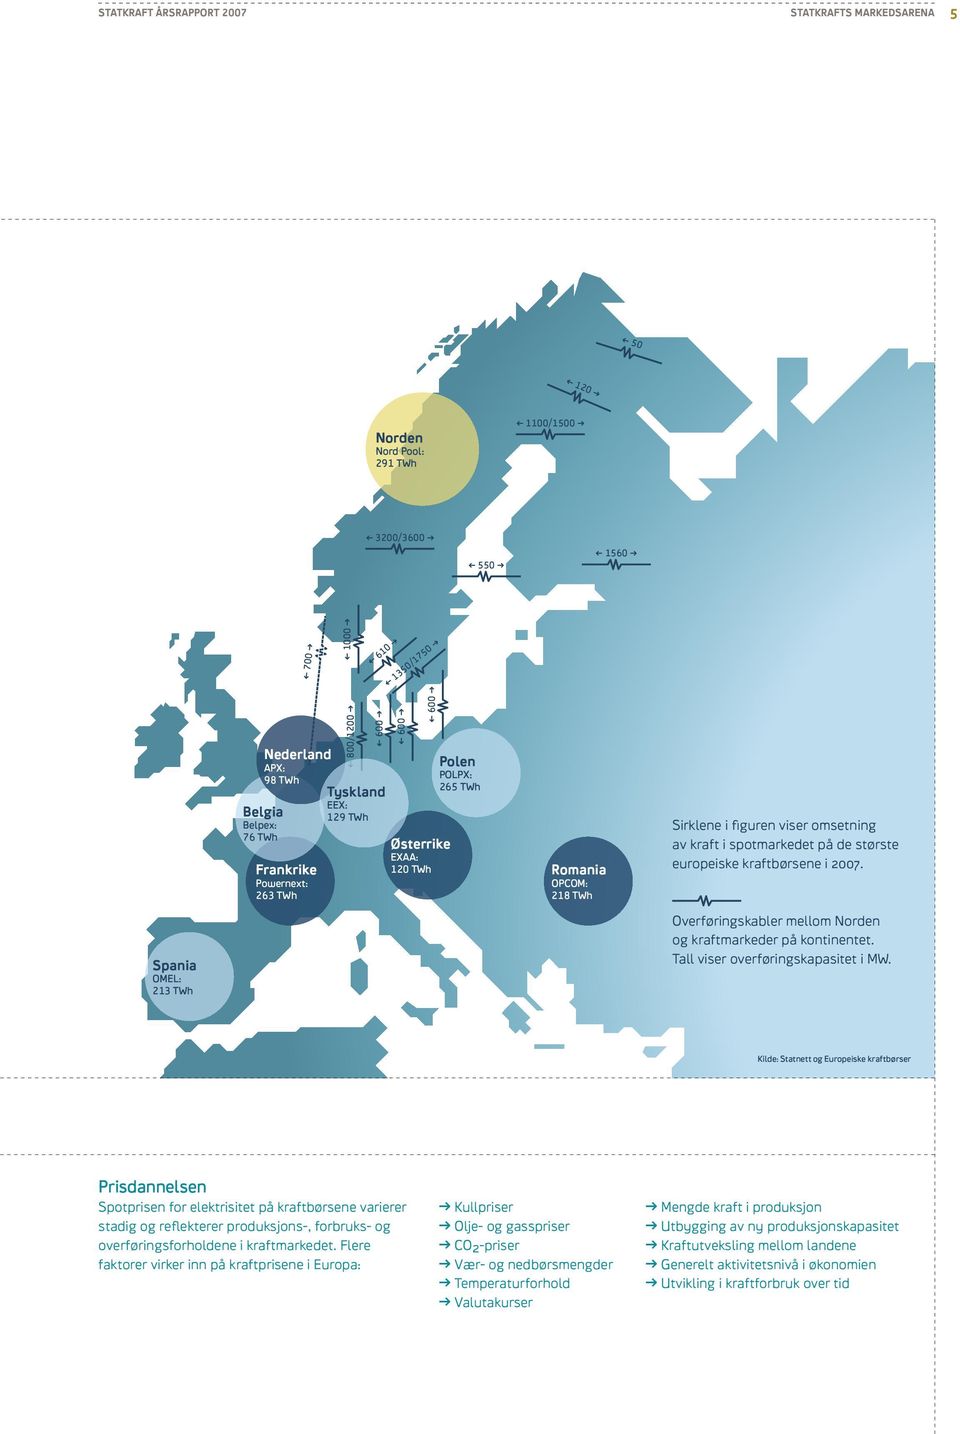 ispotmarkedet på de største europeiskekraftbørsene i2007. Spania omel: 213 twh Overføringskabler mellom Norden og kraftmarkeder på kontinentet. Tall viser overføringskapasitet imw.